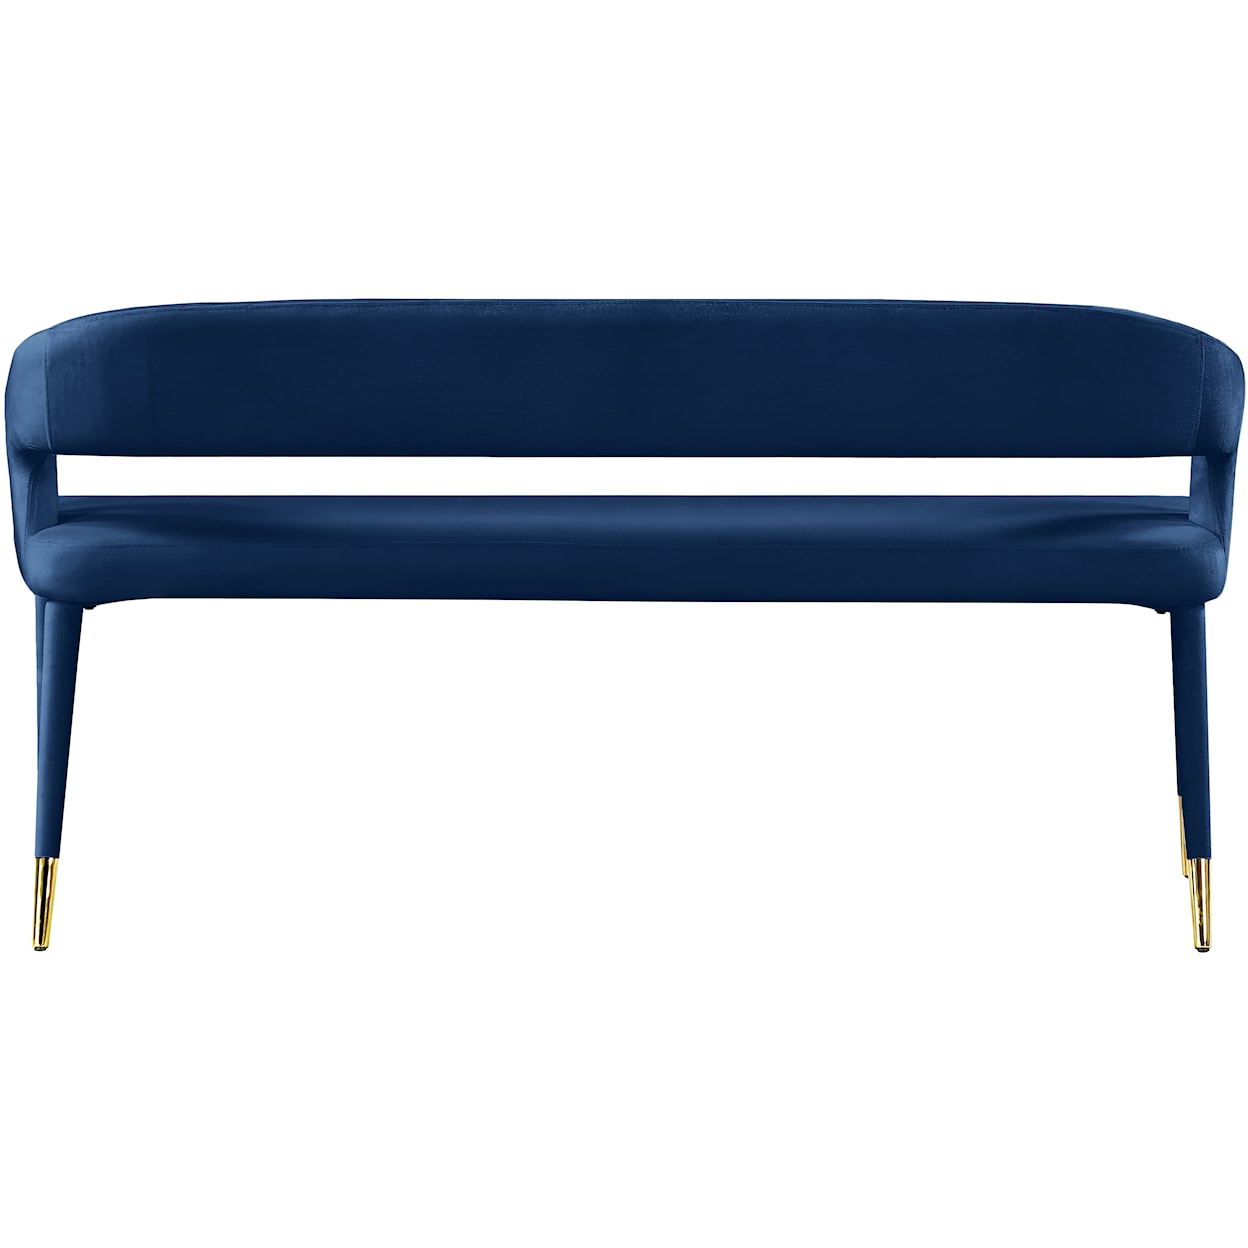 Meridian Furniture Destiny Upholstered Navy Velvet Bench